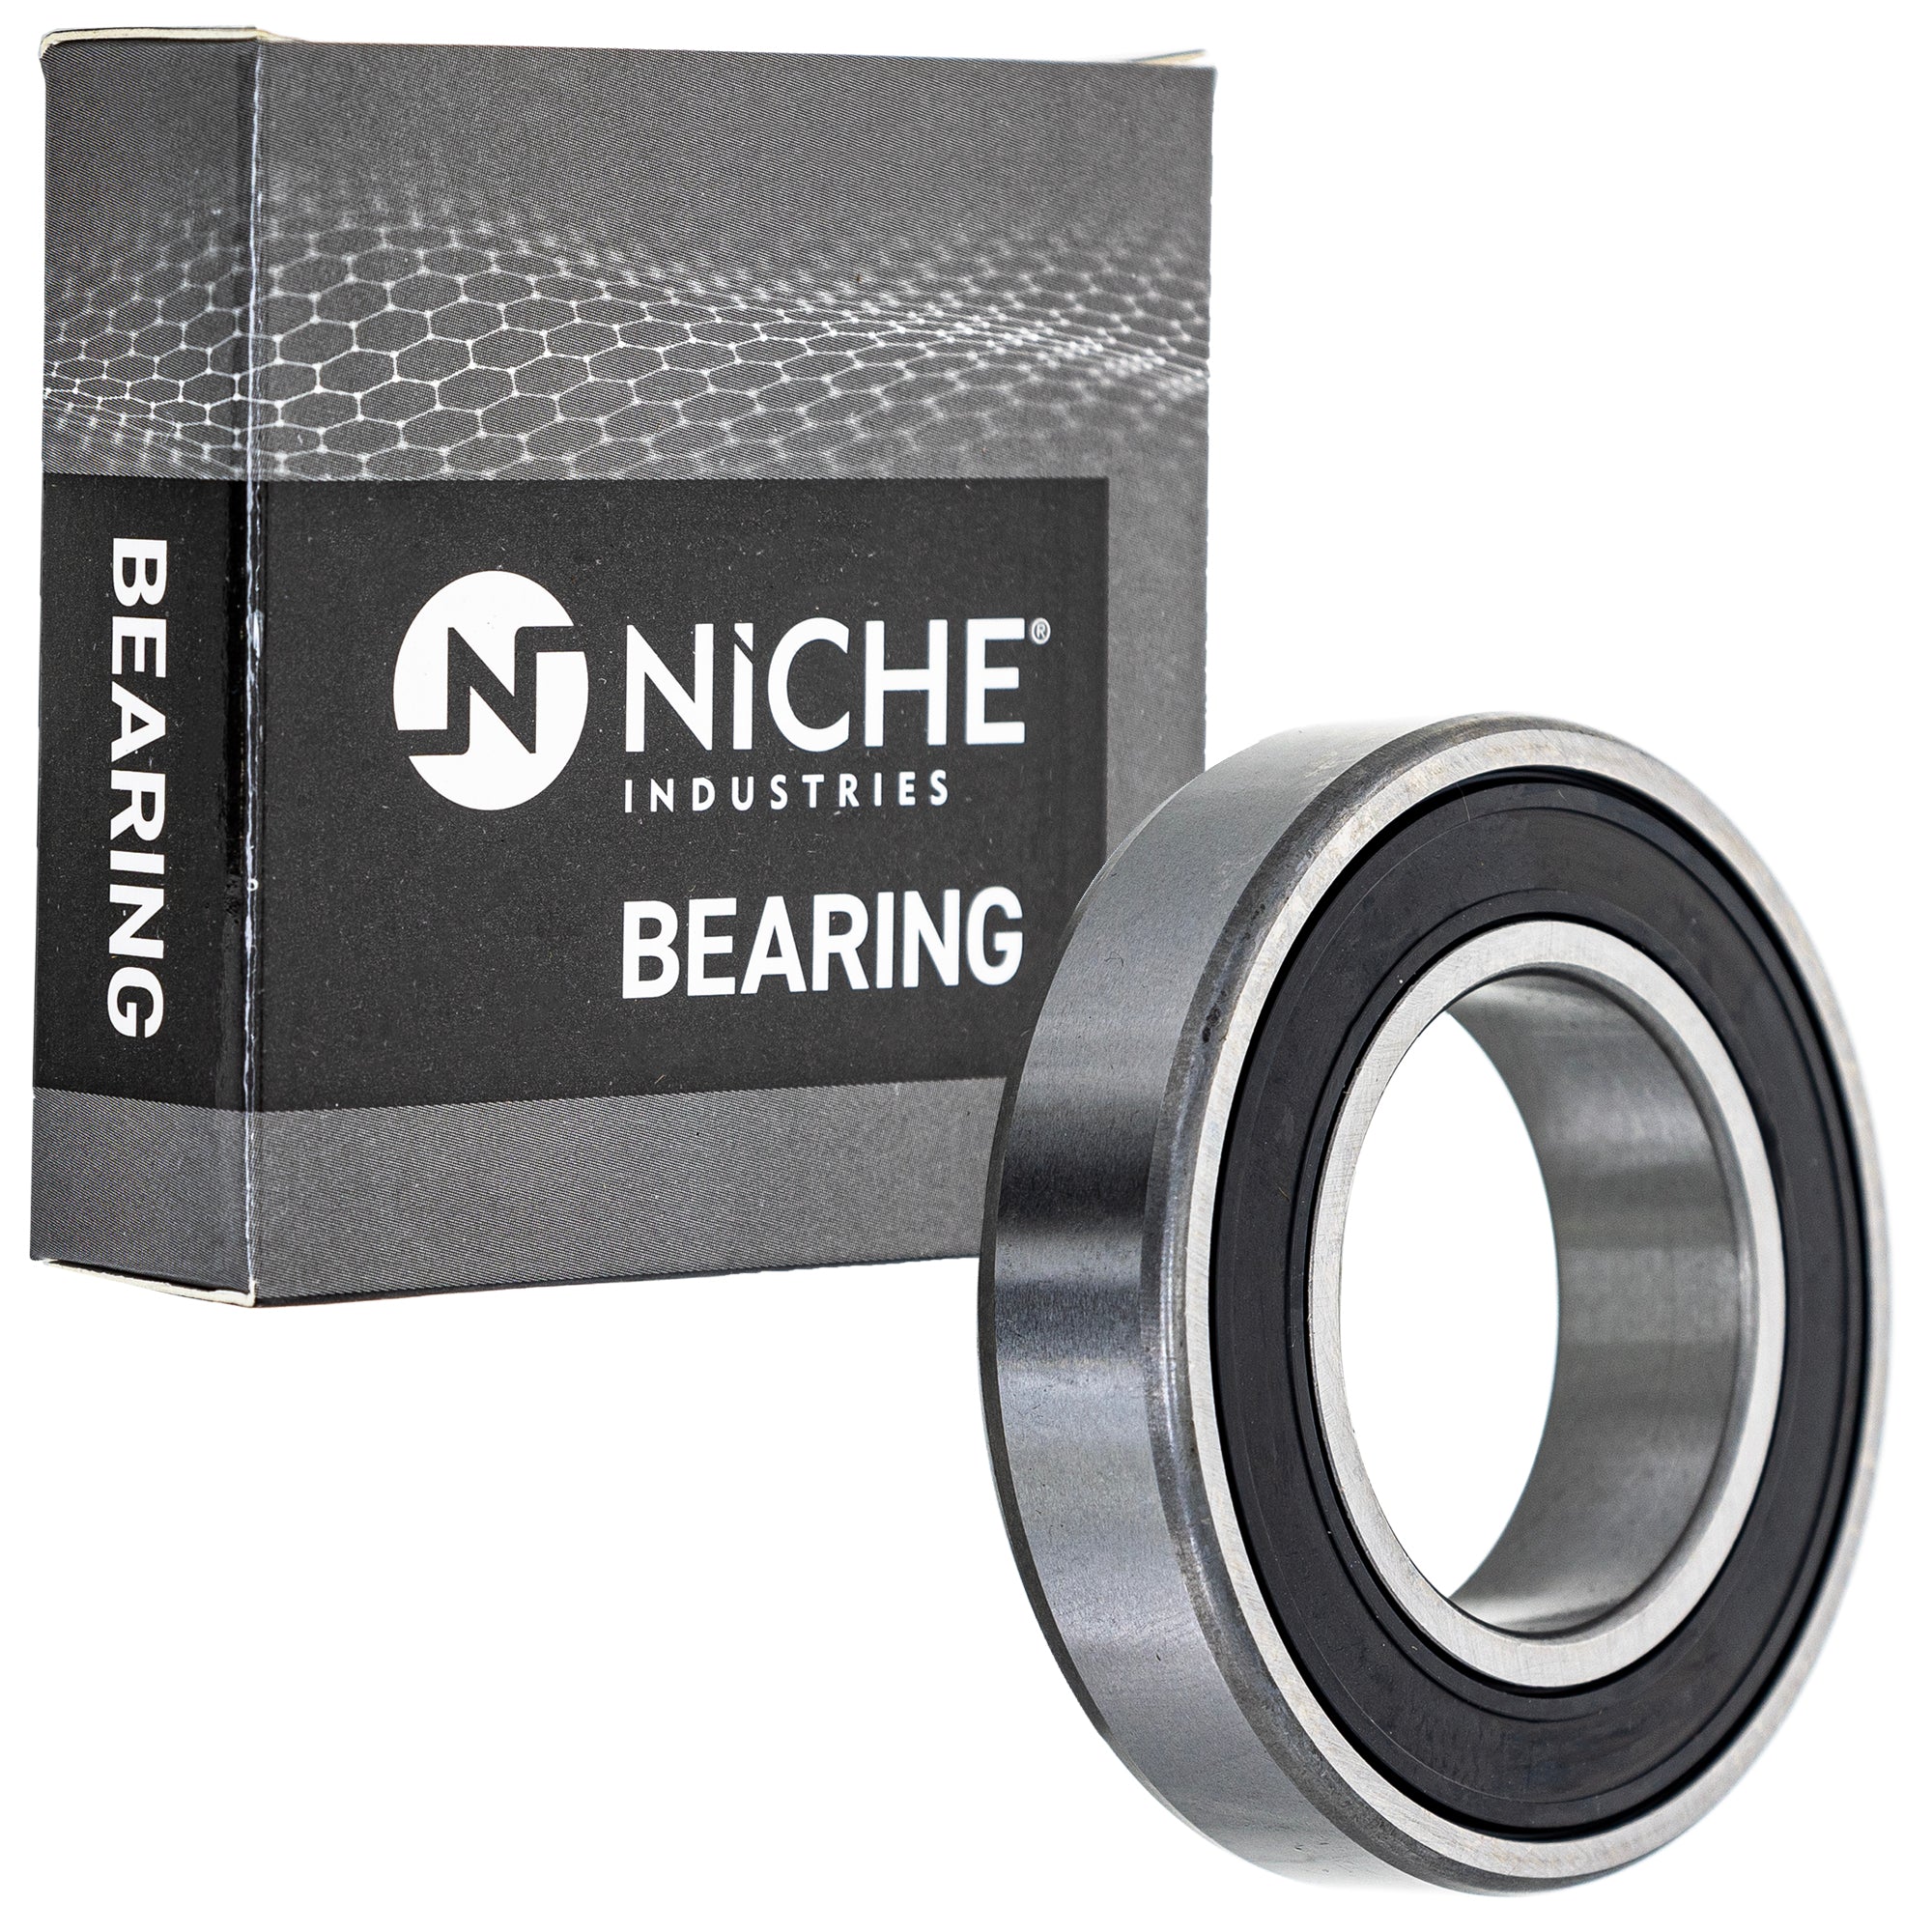 NICHE 519-CBB2336R Bearing 2-Pack for zOTHER XR80R XR80 XR75 XR70R